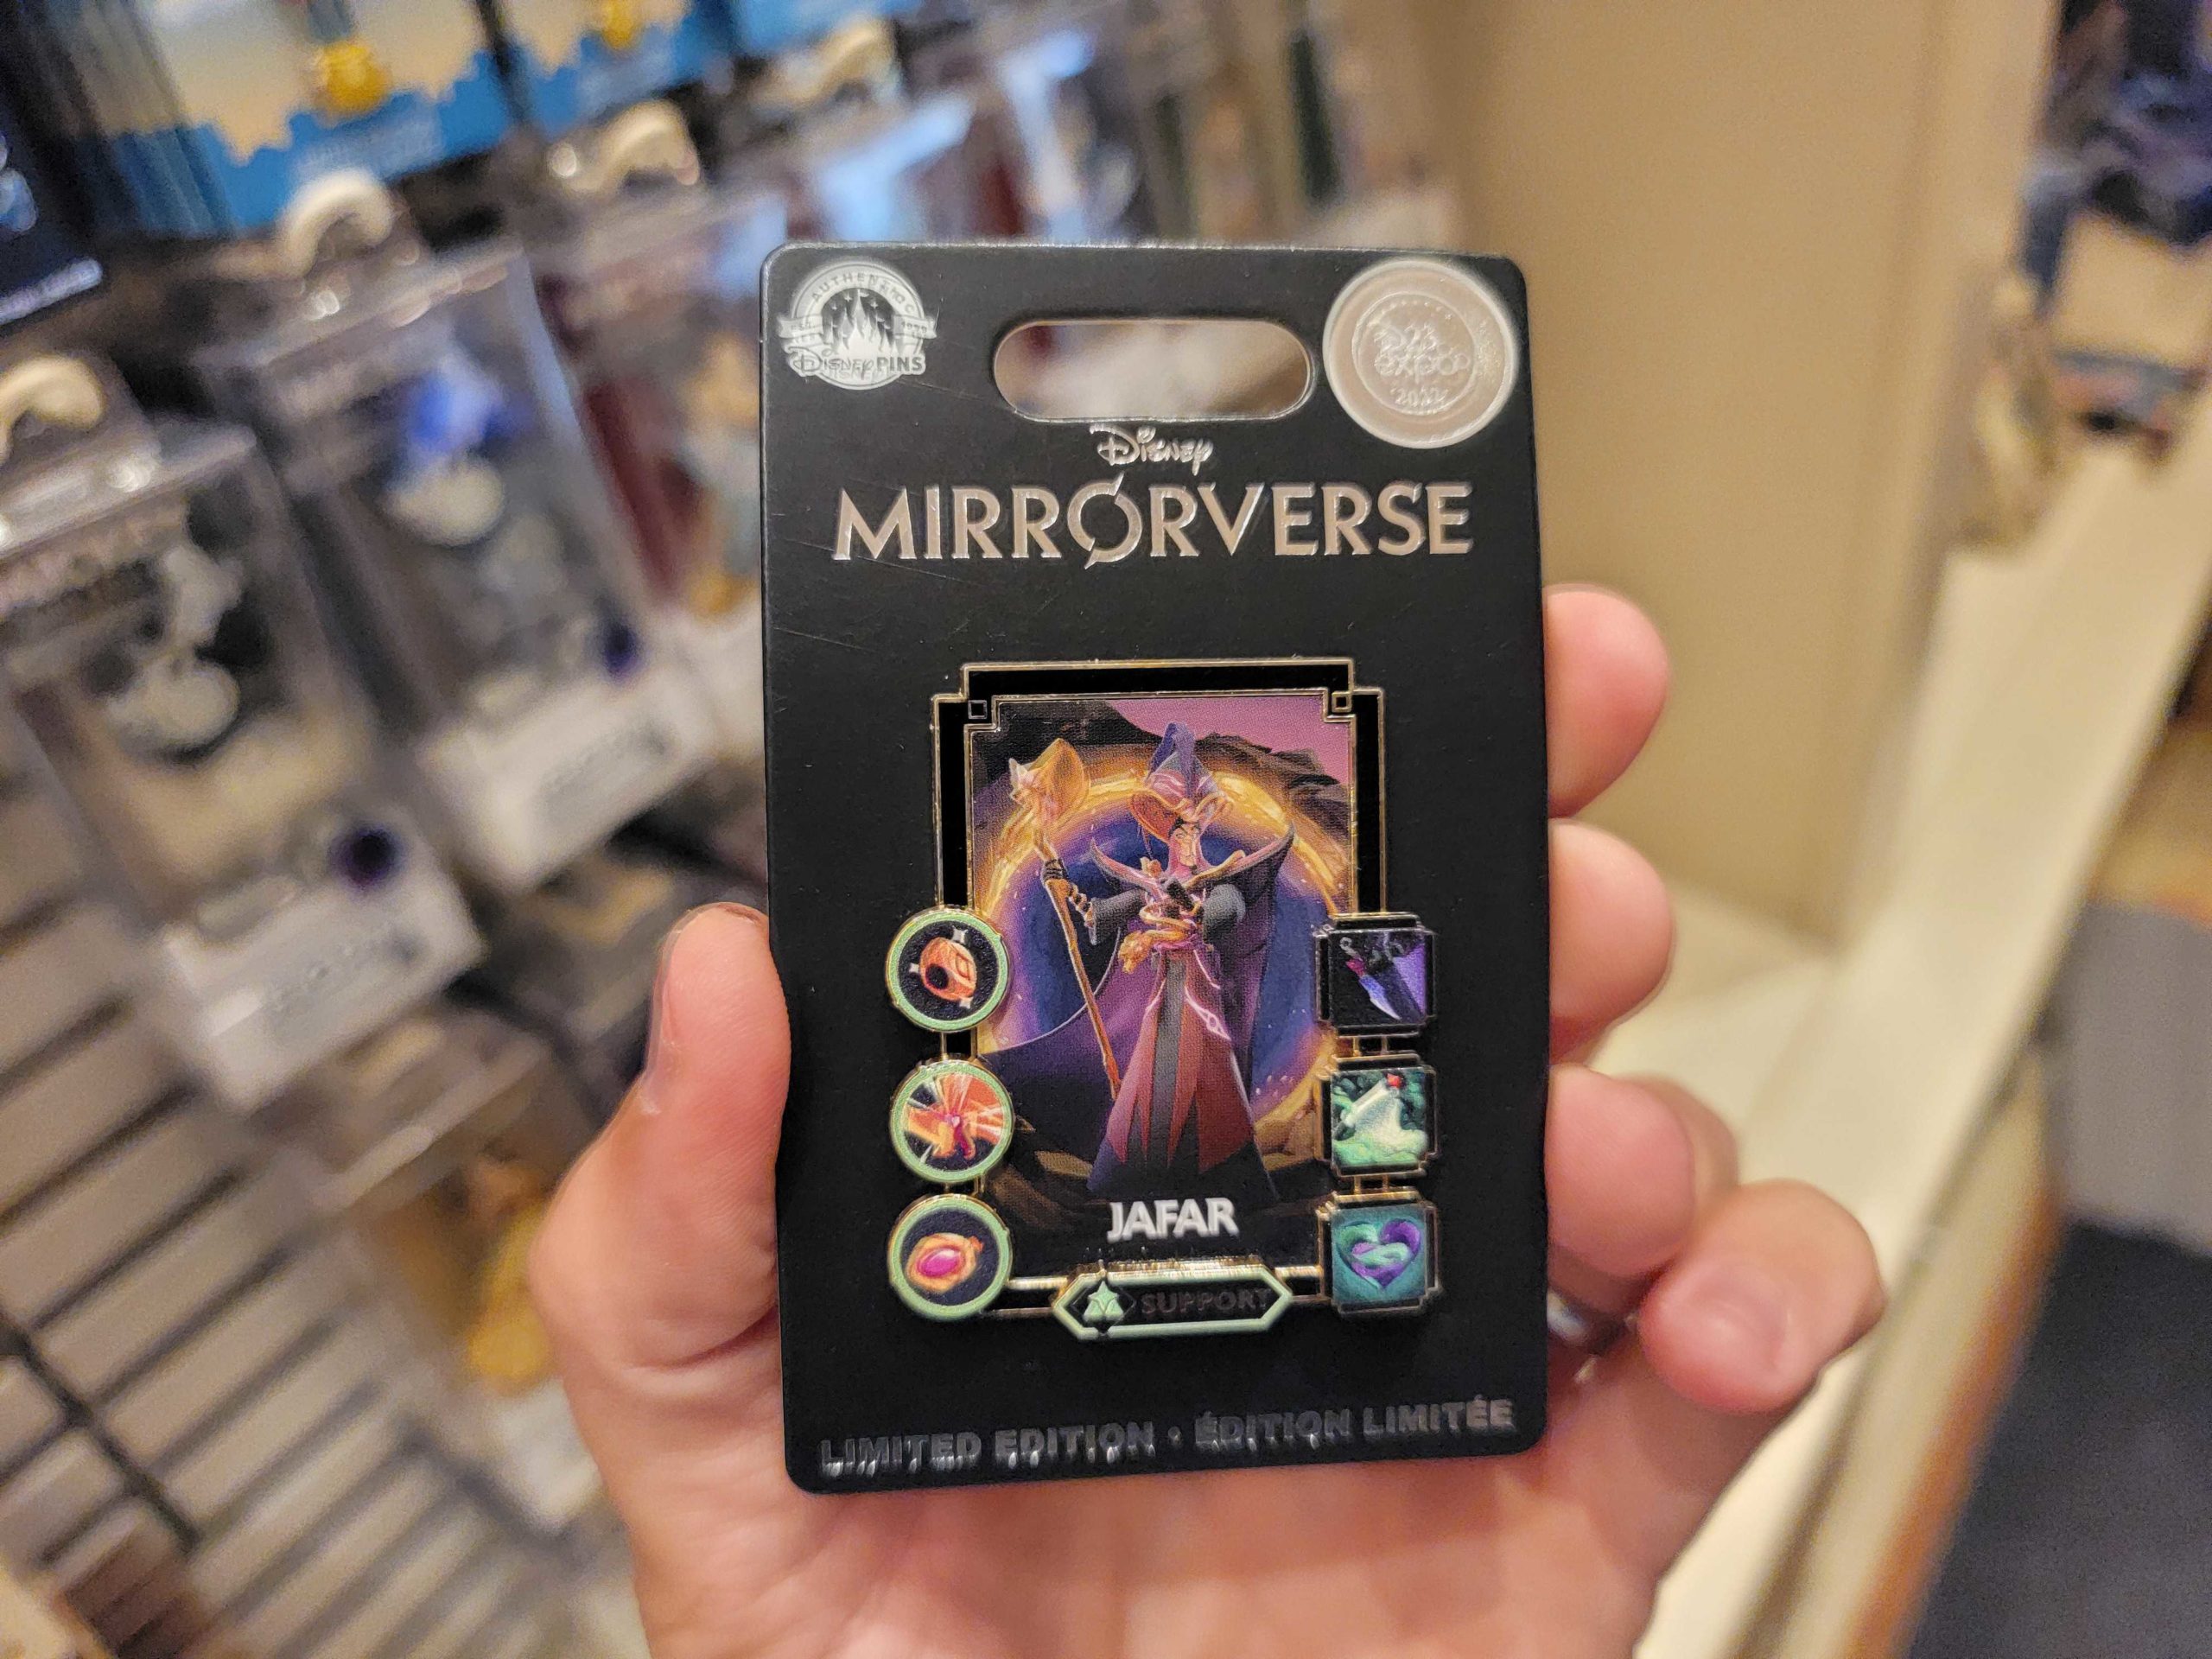 Jafar Mirrorverse pin